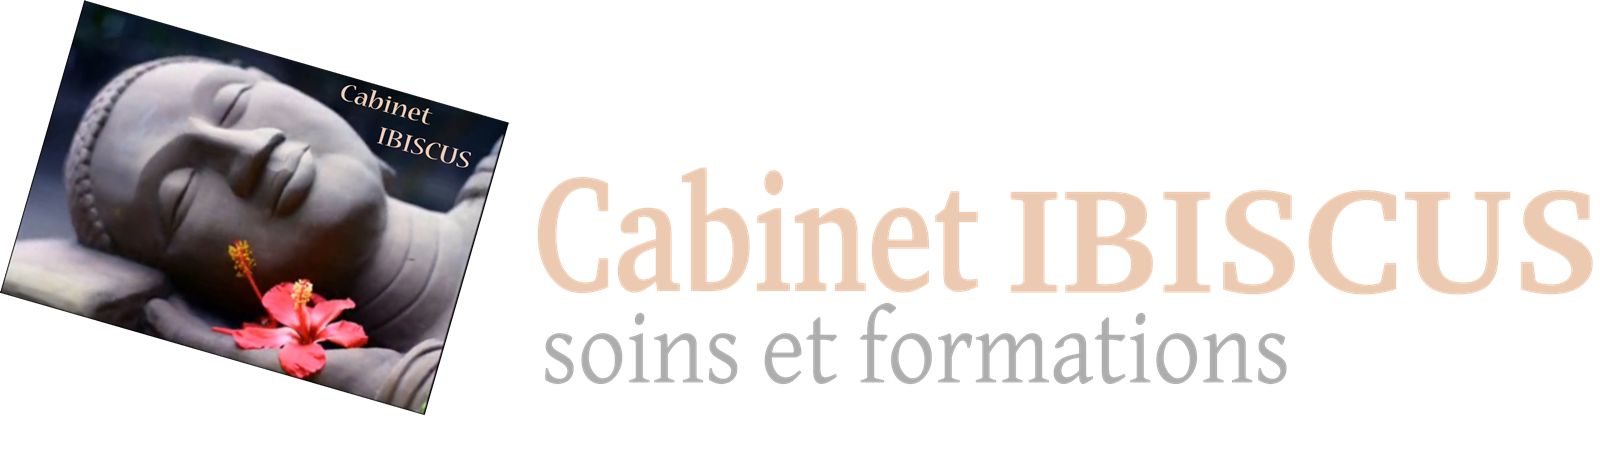 Cabinet Ibiscus